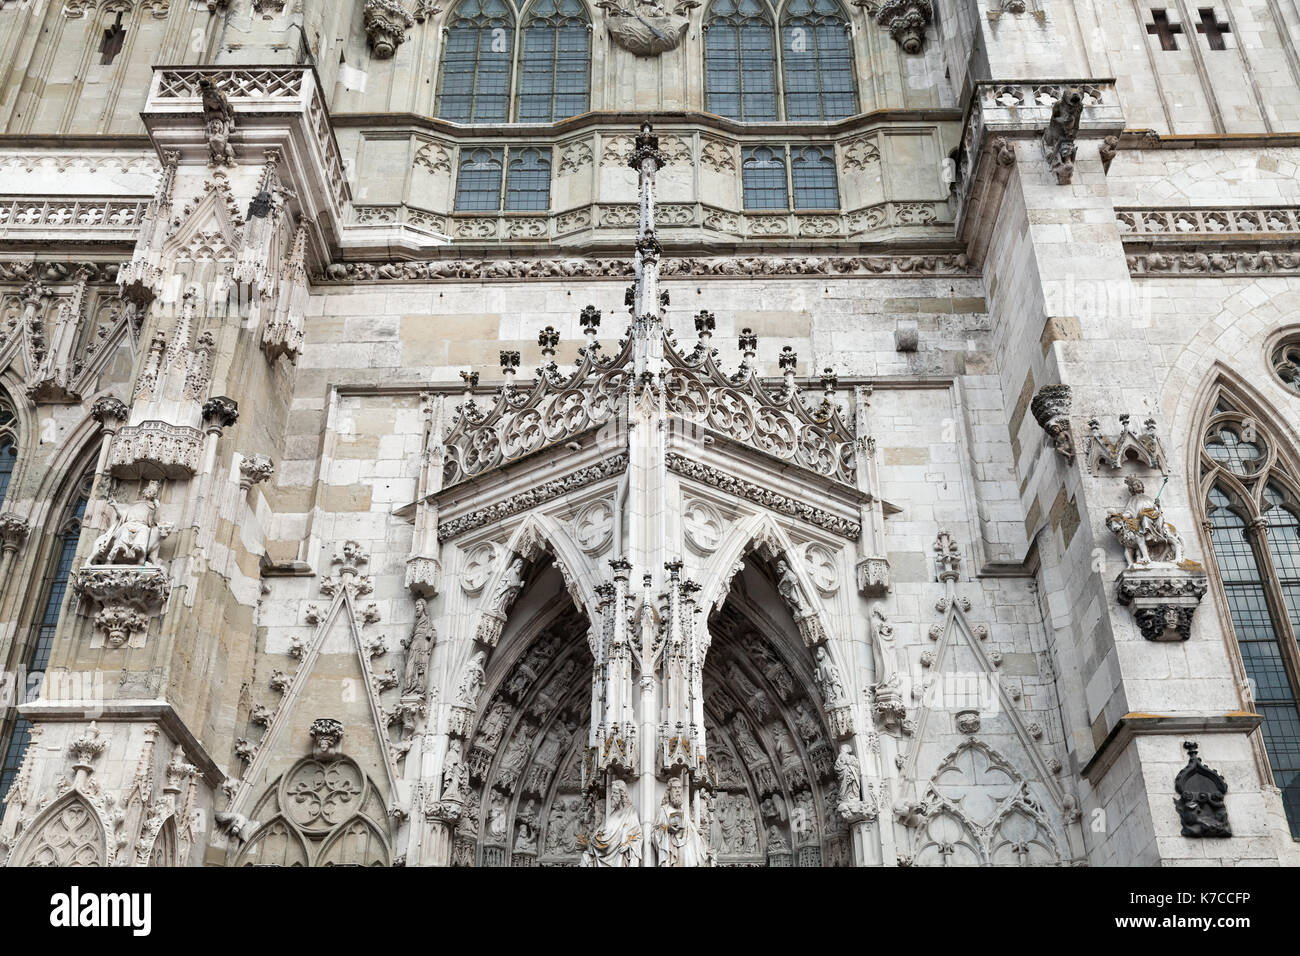 Fachada principal fragmento de la Catedral de Regensburg. Alemania. Es la iglesia más importante y el punto de referencia de la ciudad Foto de stock